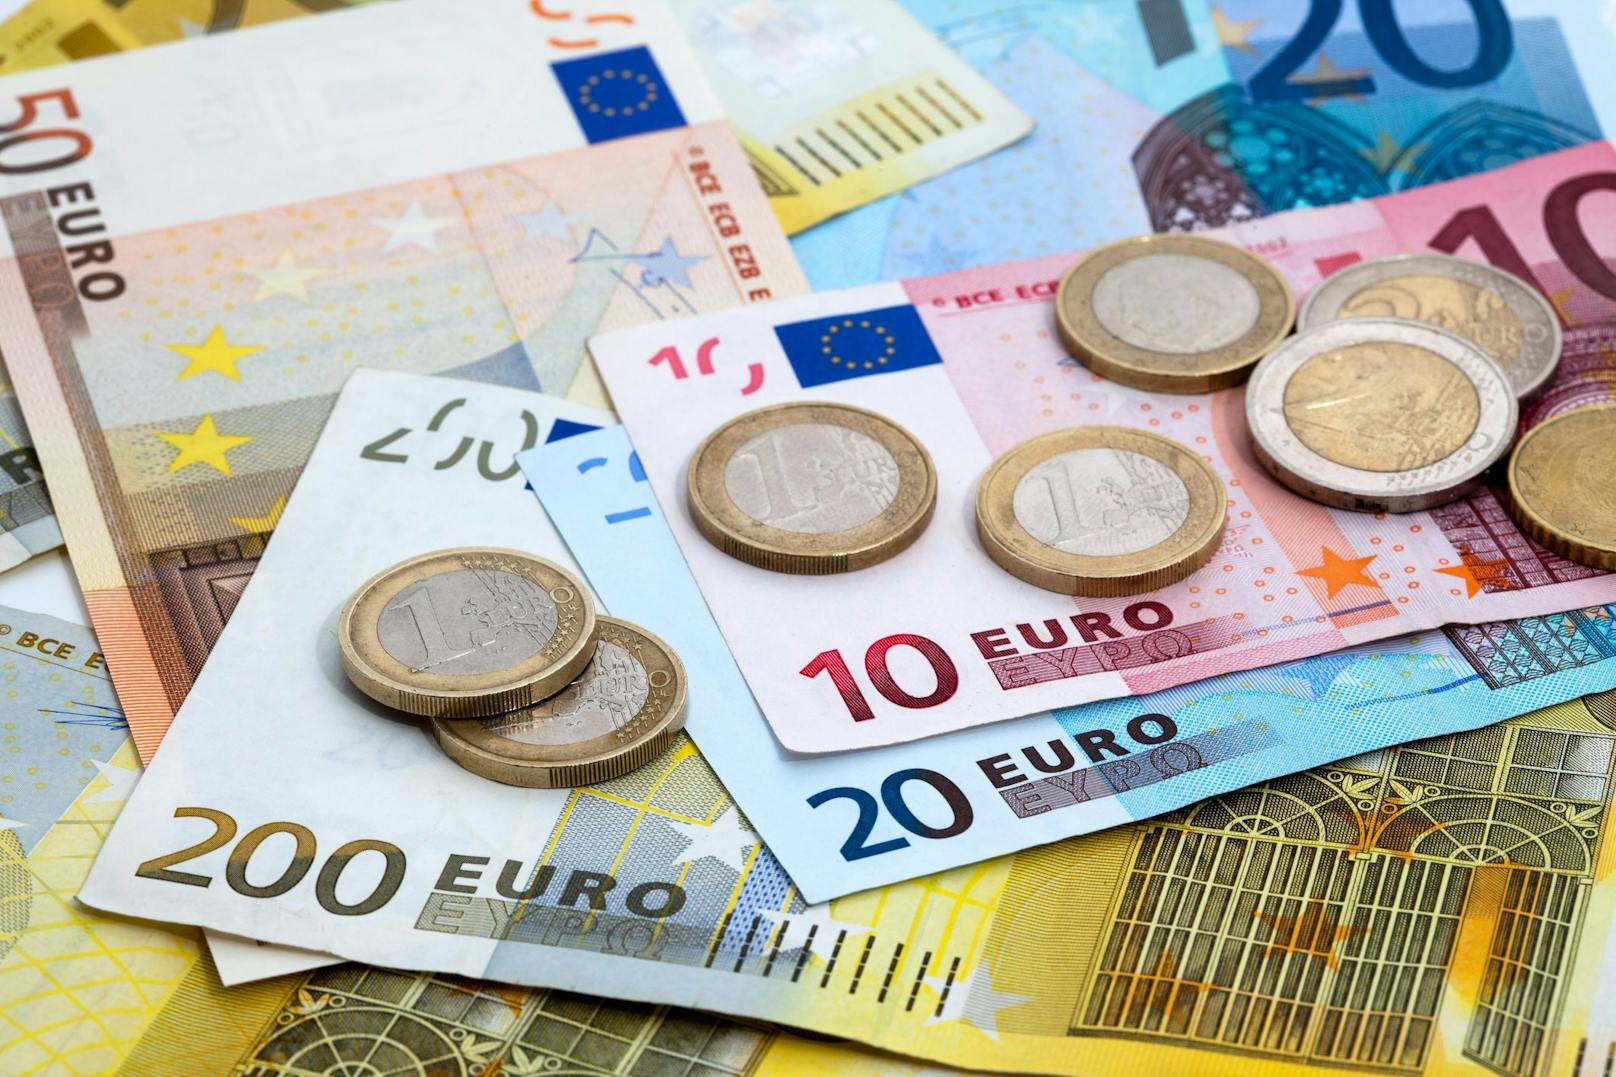 Neuer 200-Euro-Bonus – hier kannst du ihn dir nun holen